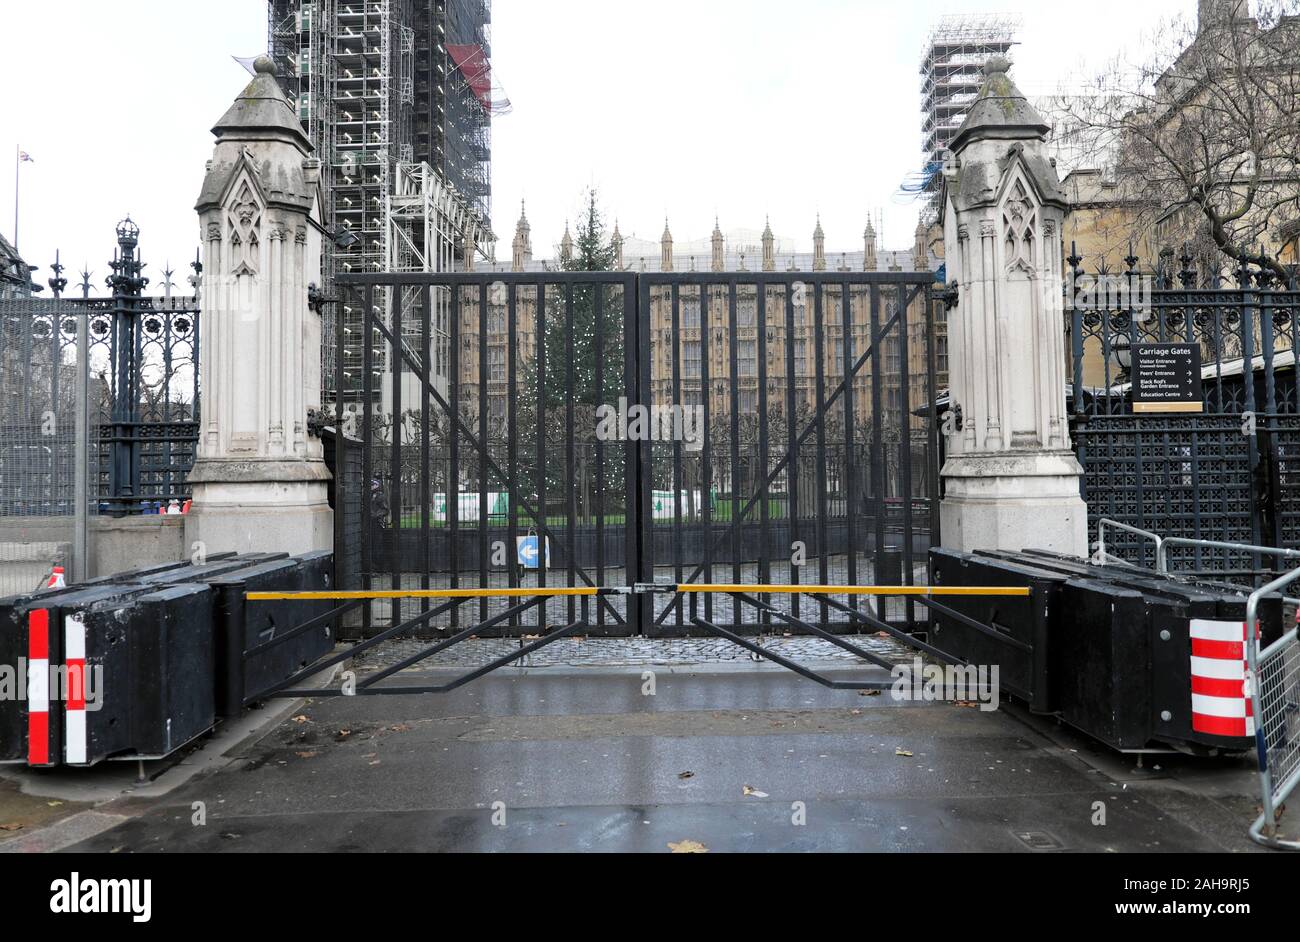 Fermé des portes de fer et les barrières anti-terroristes à l'extérieur de l'entrée des chambres du Parlement et Crhistmas tree Westminster London UK KATHY DEWITT Banque D'Images